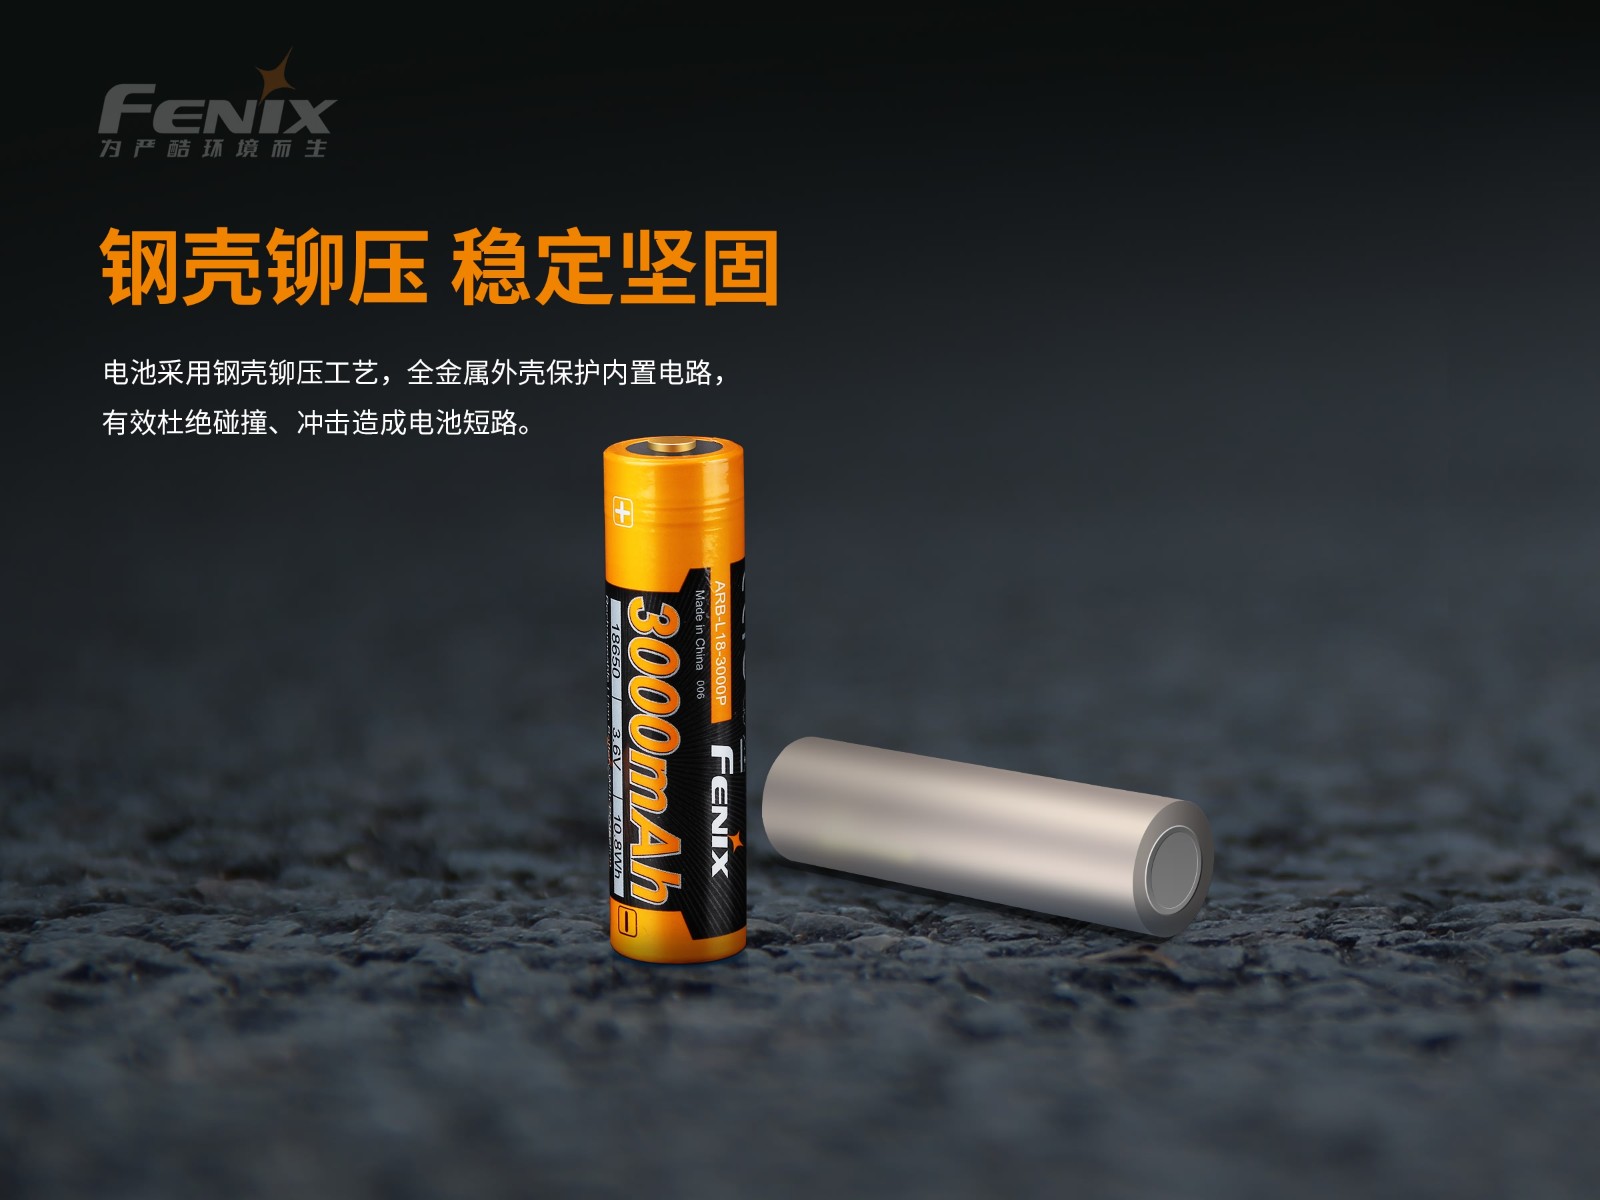 菲尼克斯（Fenix）锂离子动力电池ARB-L18-3000P 18650-3.6